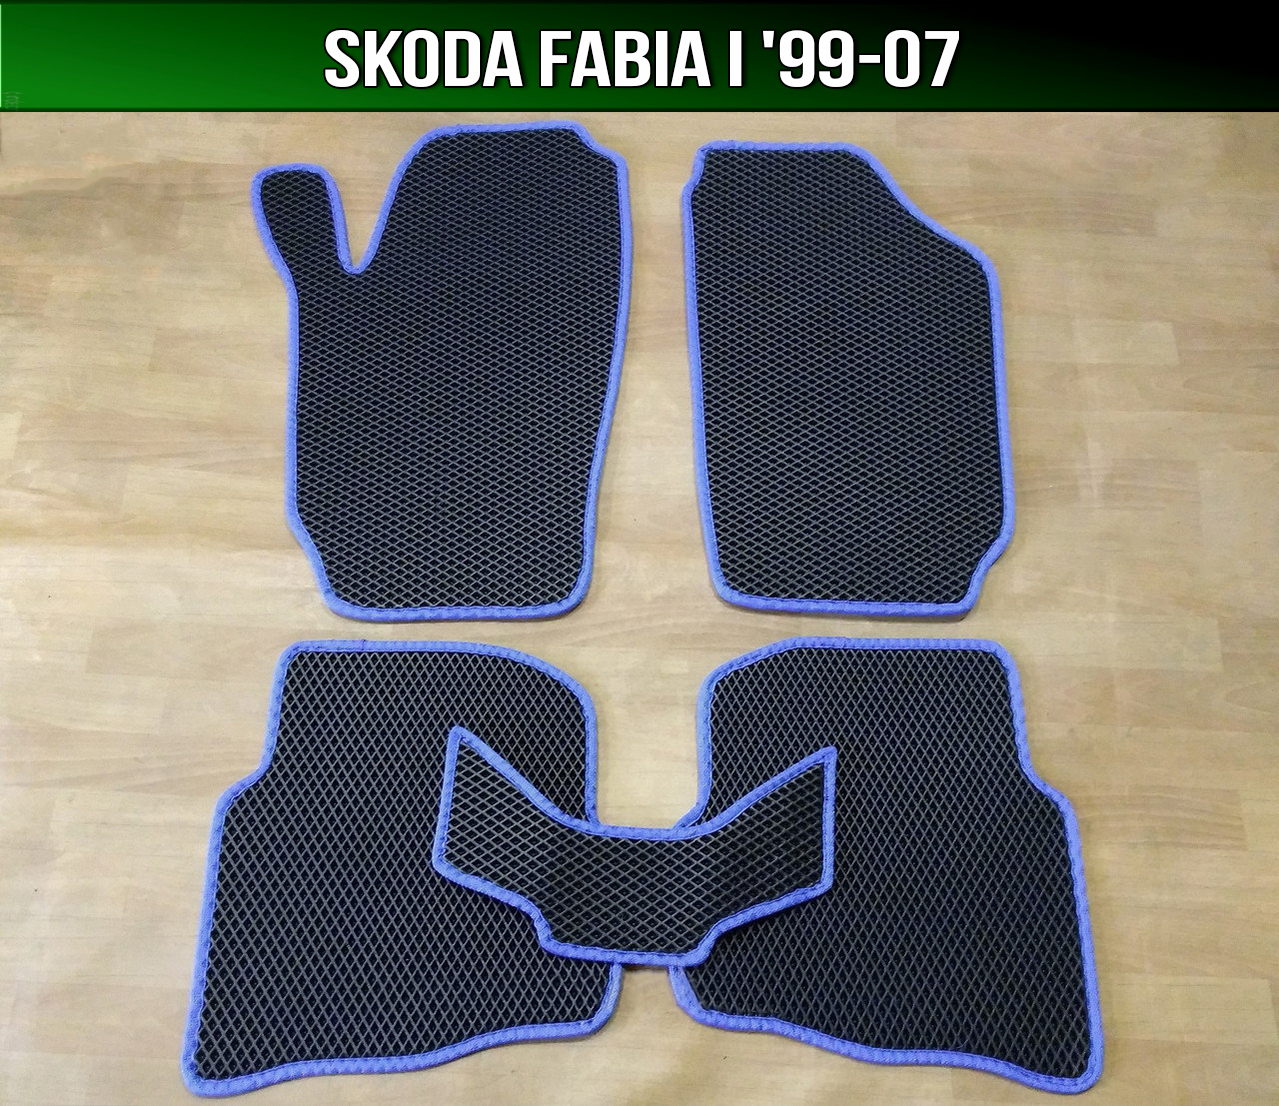 ЄВА килимки Skoda Fabia 1 '99-07. EVA килими Шкода Фабія 1